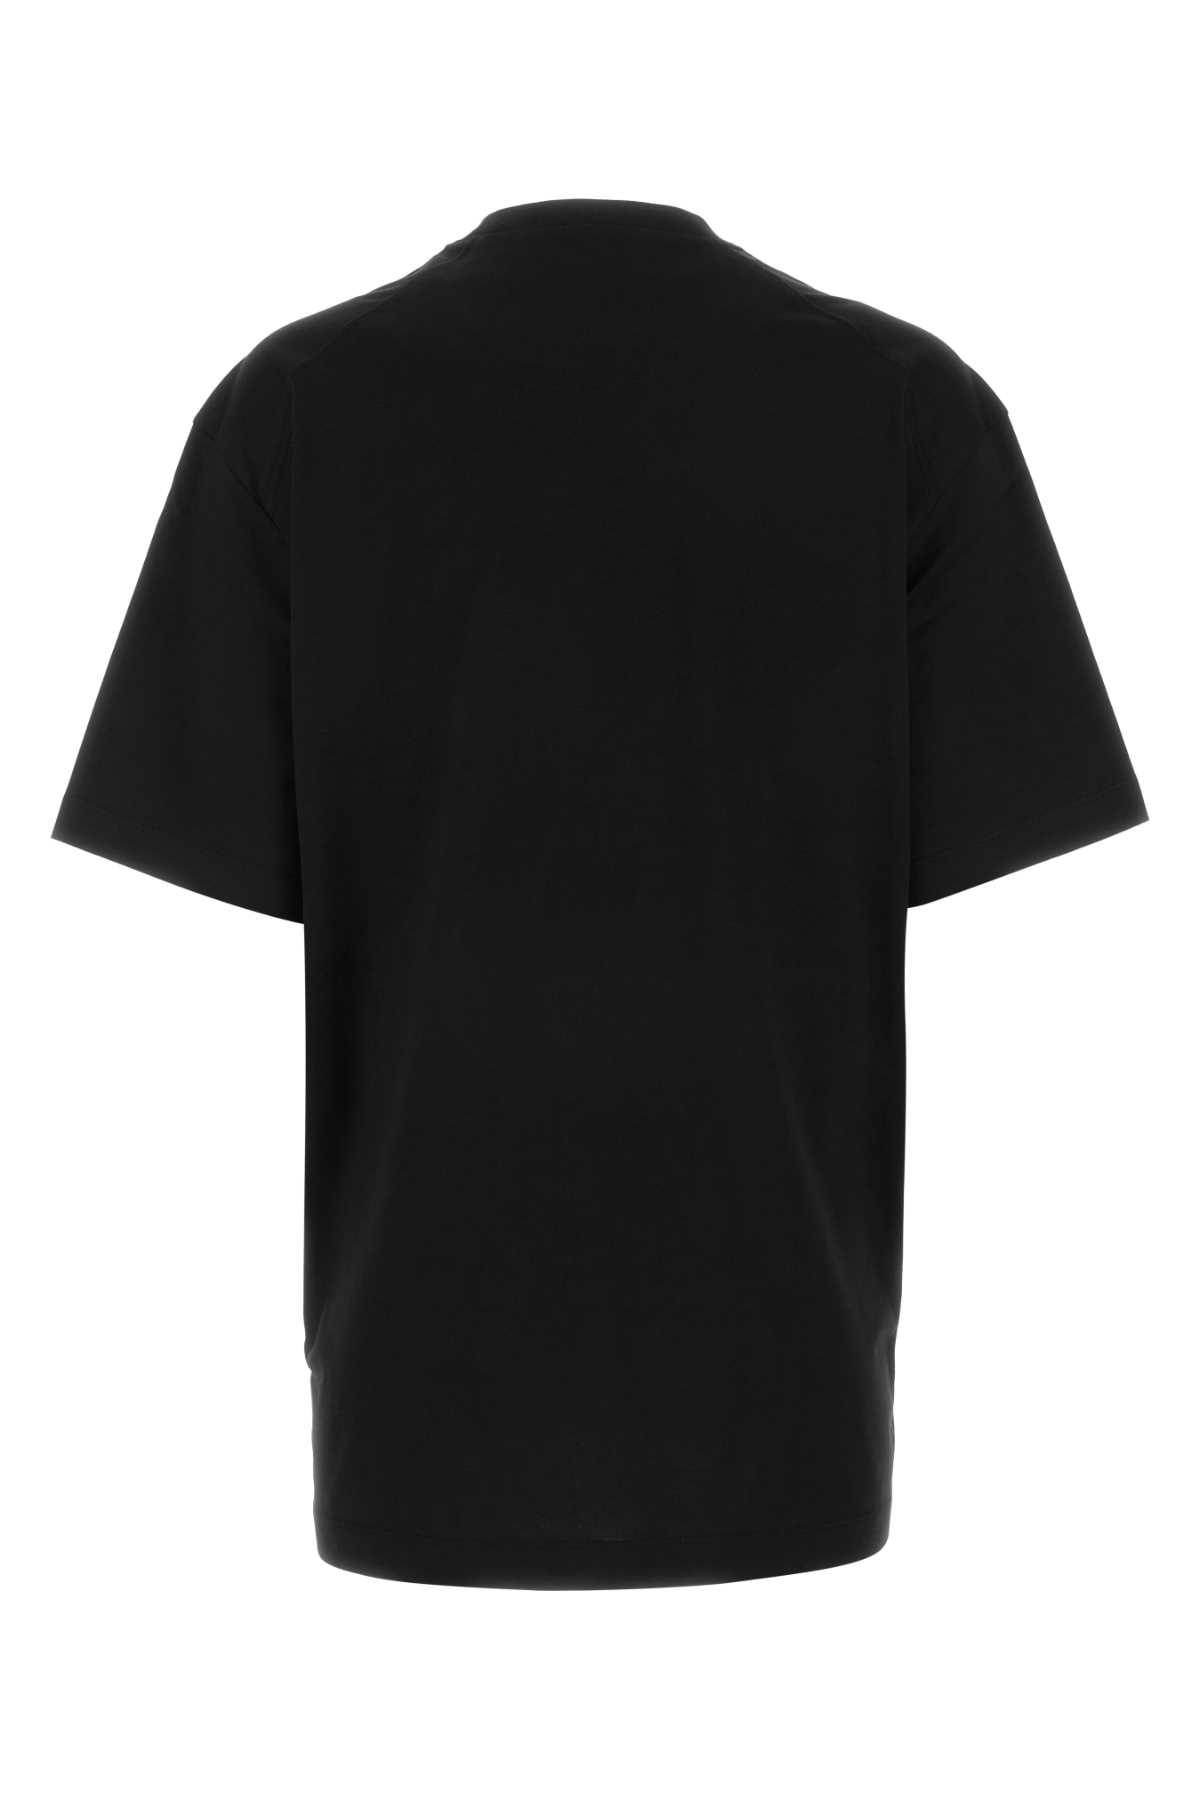 Y-3 Black Cotton Oversize T-shirt